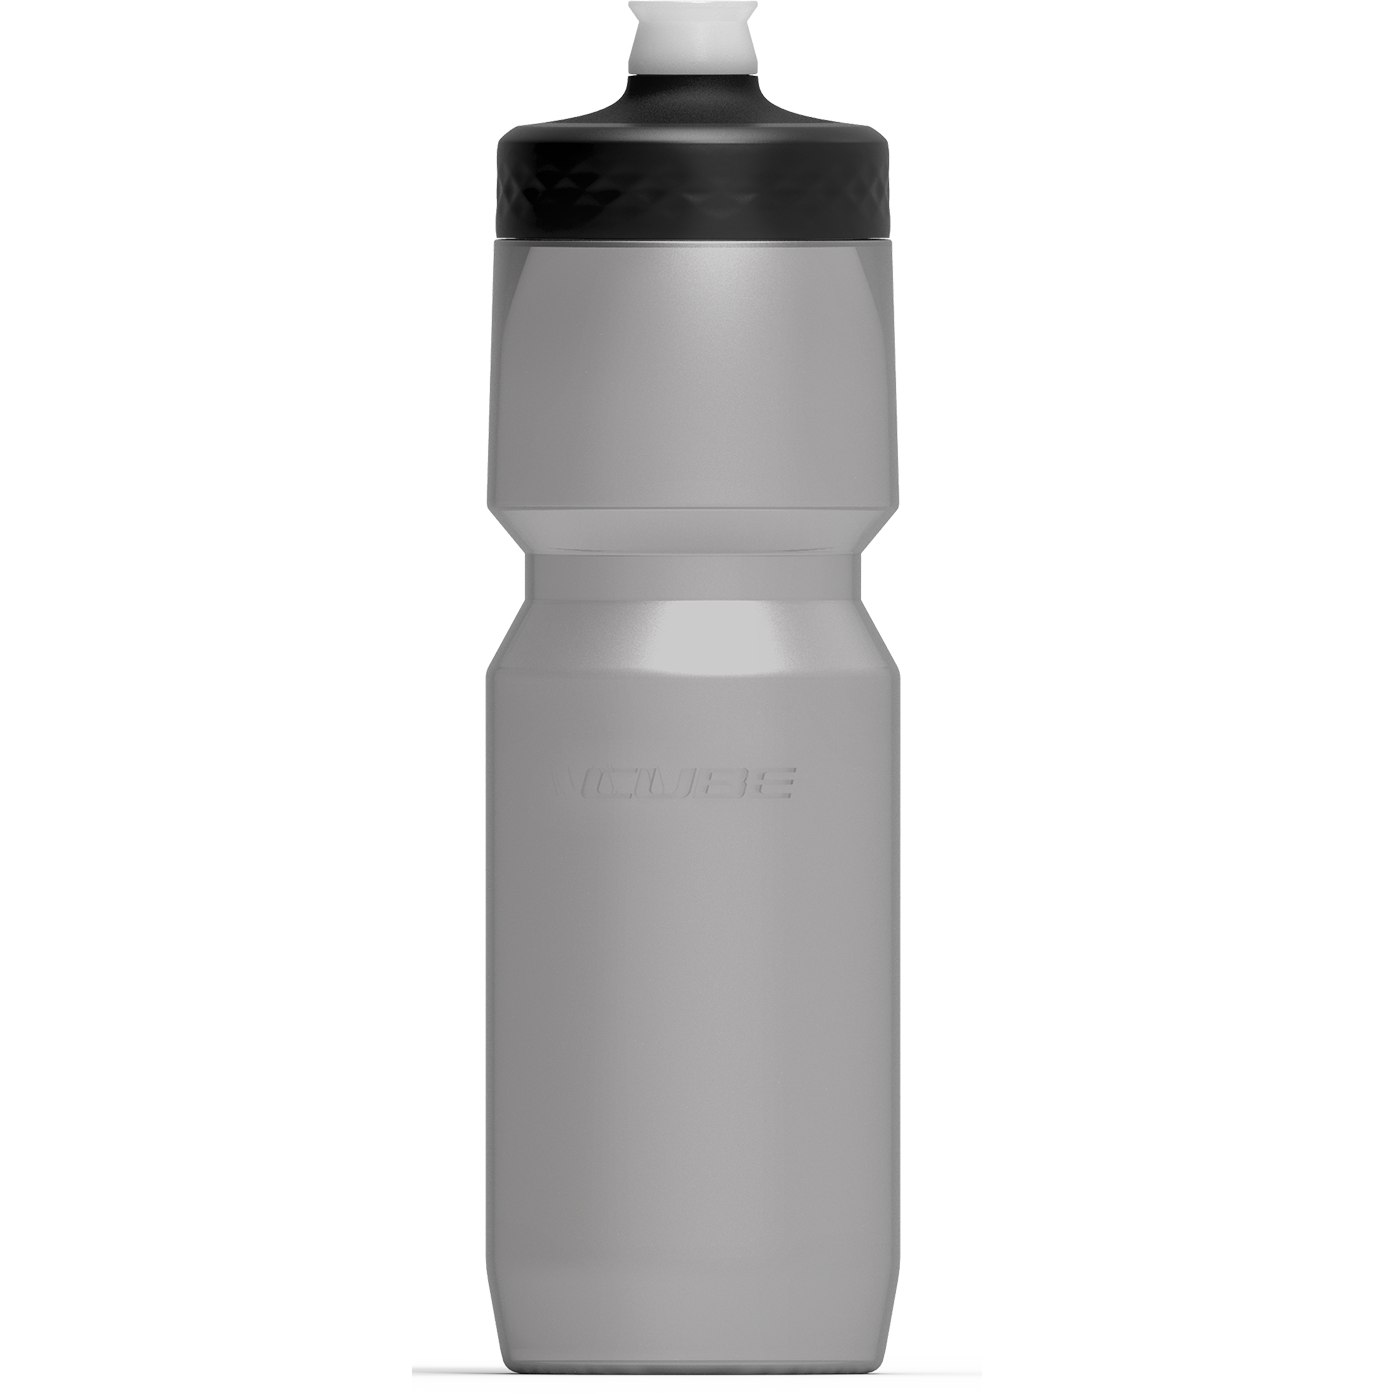 Produktbild von CUBE Trinkflasche Grip 0.75l - transparent